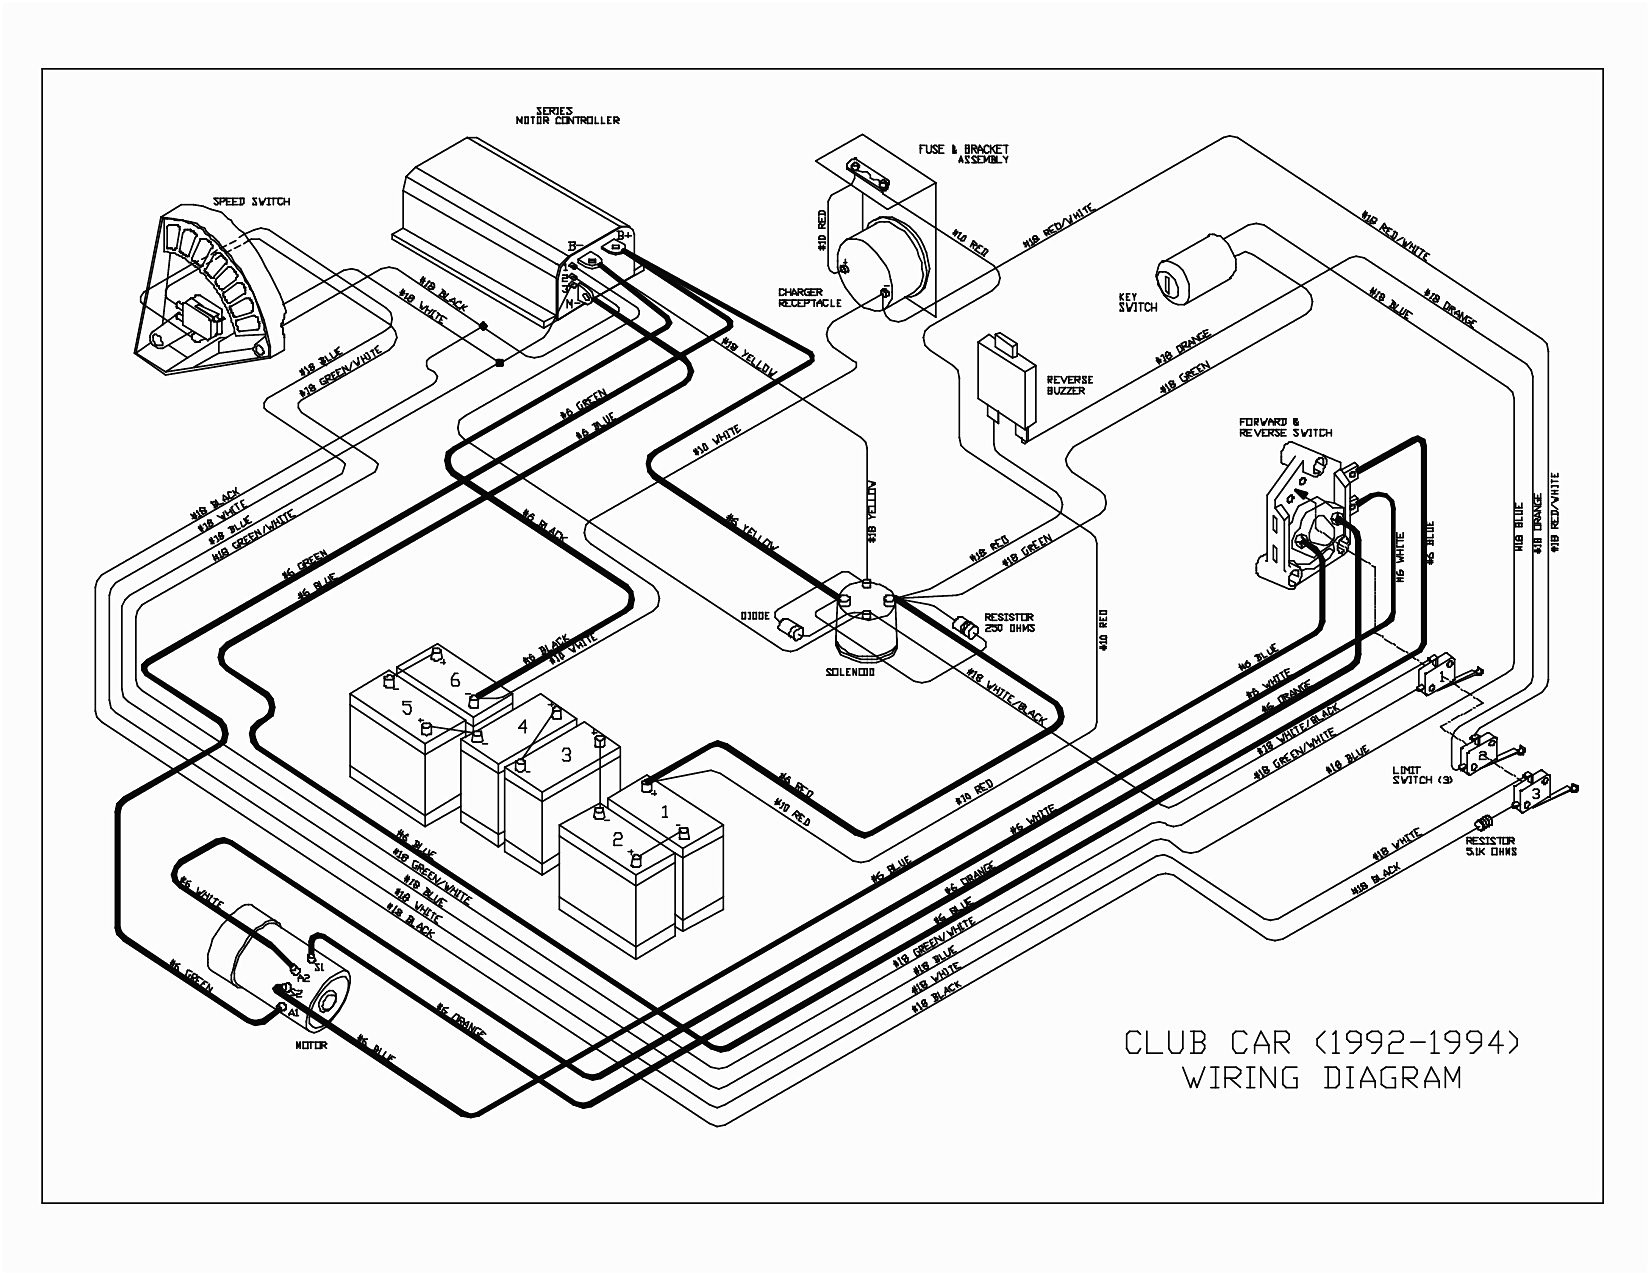 1985 club car wiring diagram schematic schematic diagram database 1978 ezgo wiring diagram free download schematic